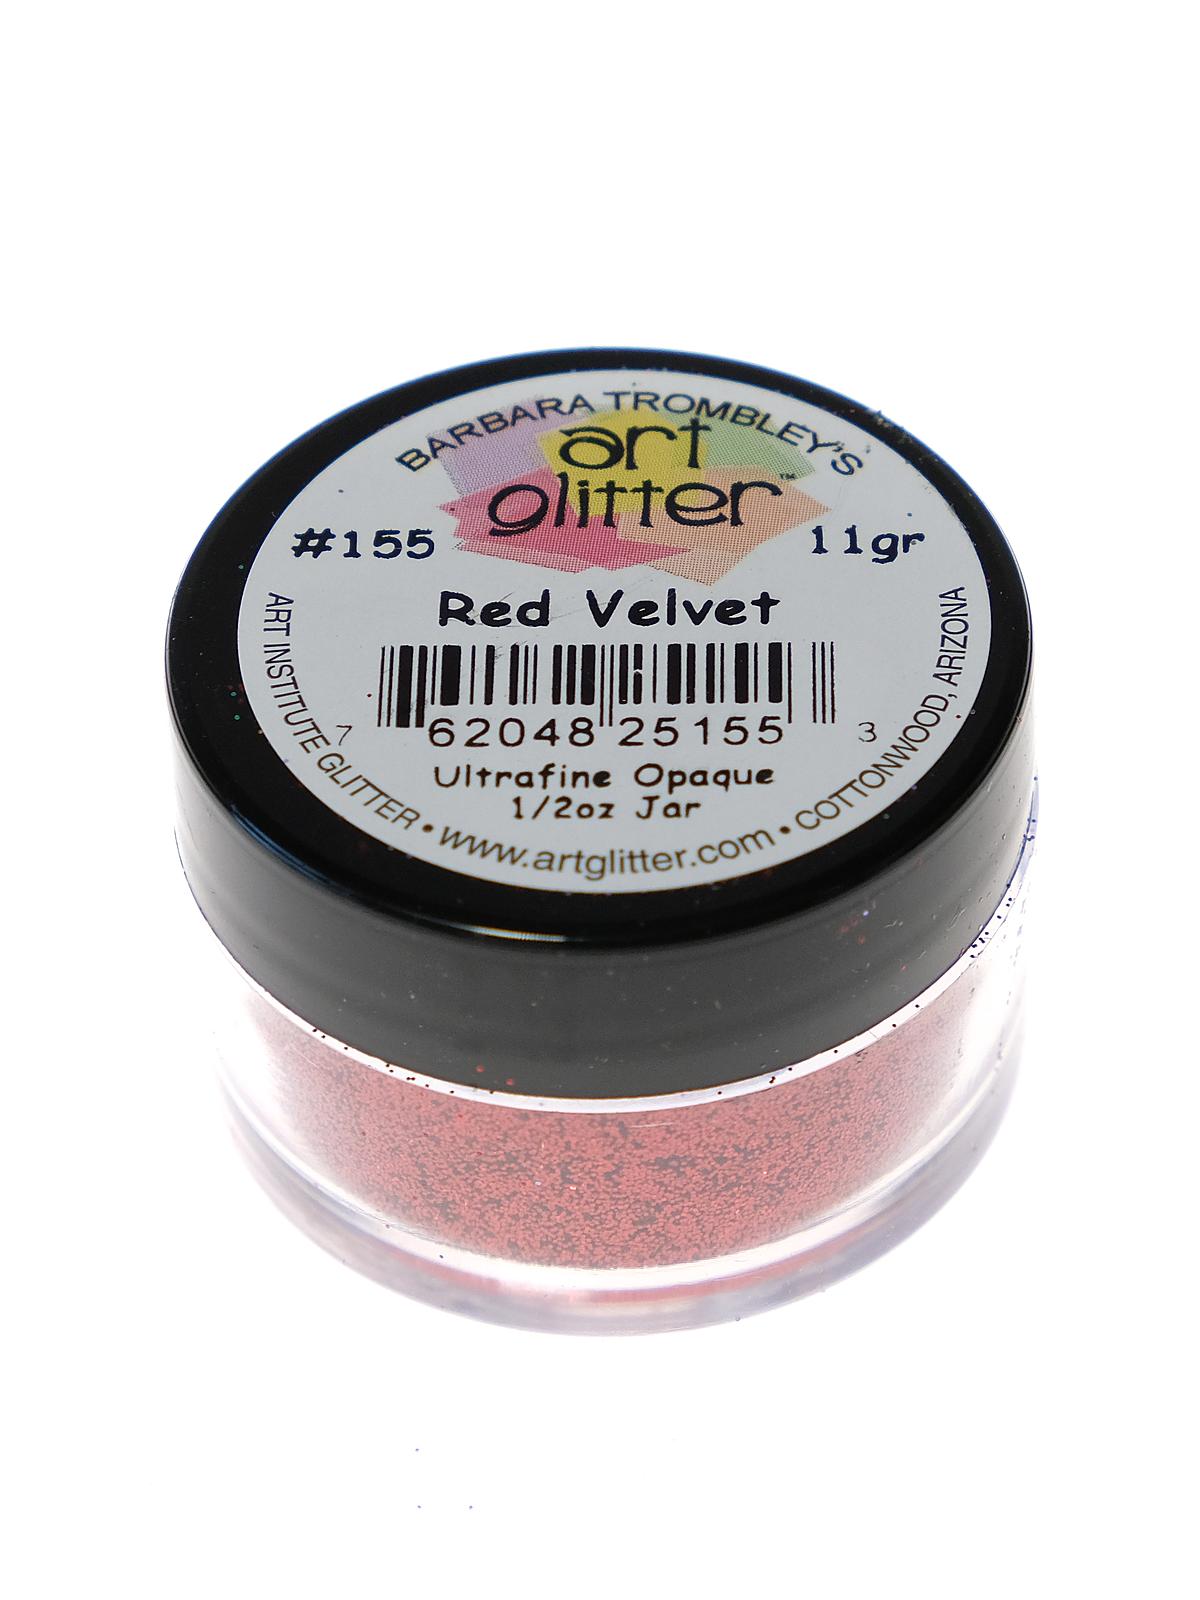 Ultrafine Opaque Glitter Red Velvet 1 2 Oz. Jar